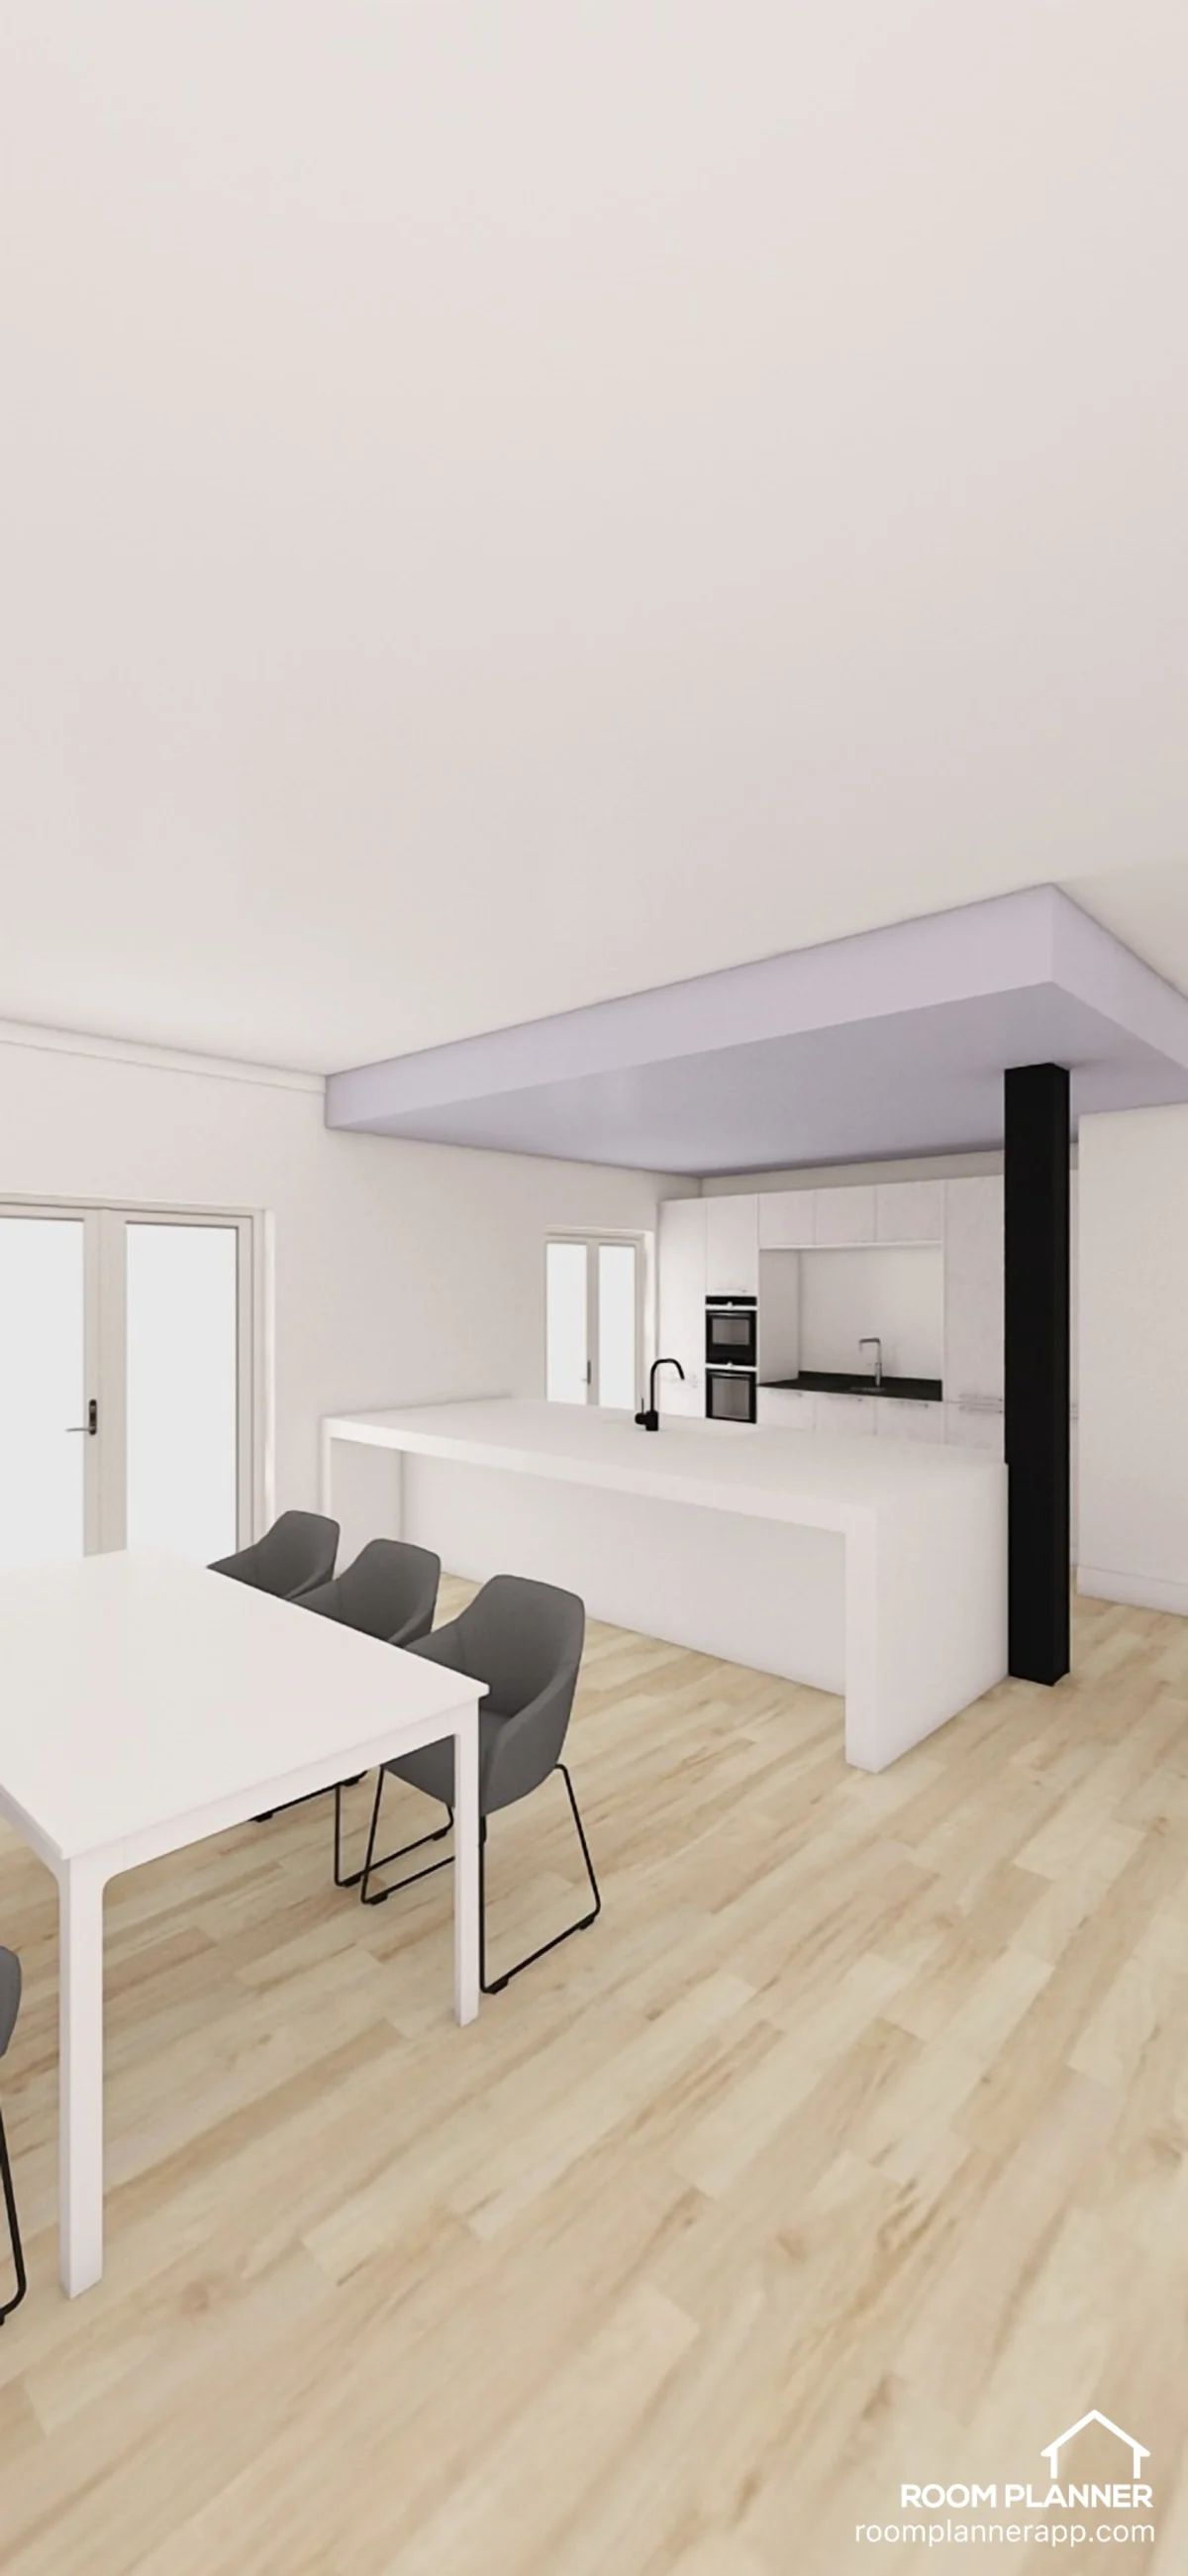 Urbaner Wohntraum: Elegante 2-Balkon Wohnung mit Luxusausstattung